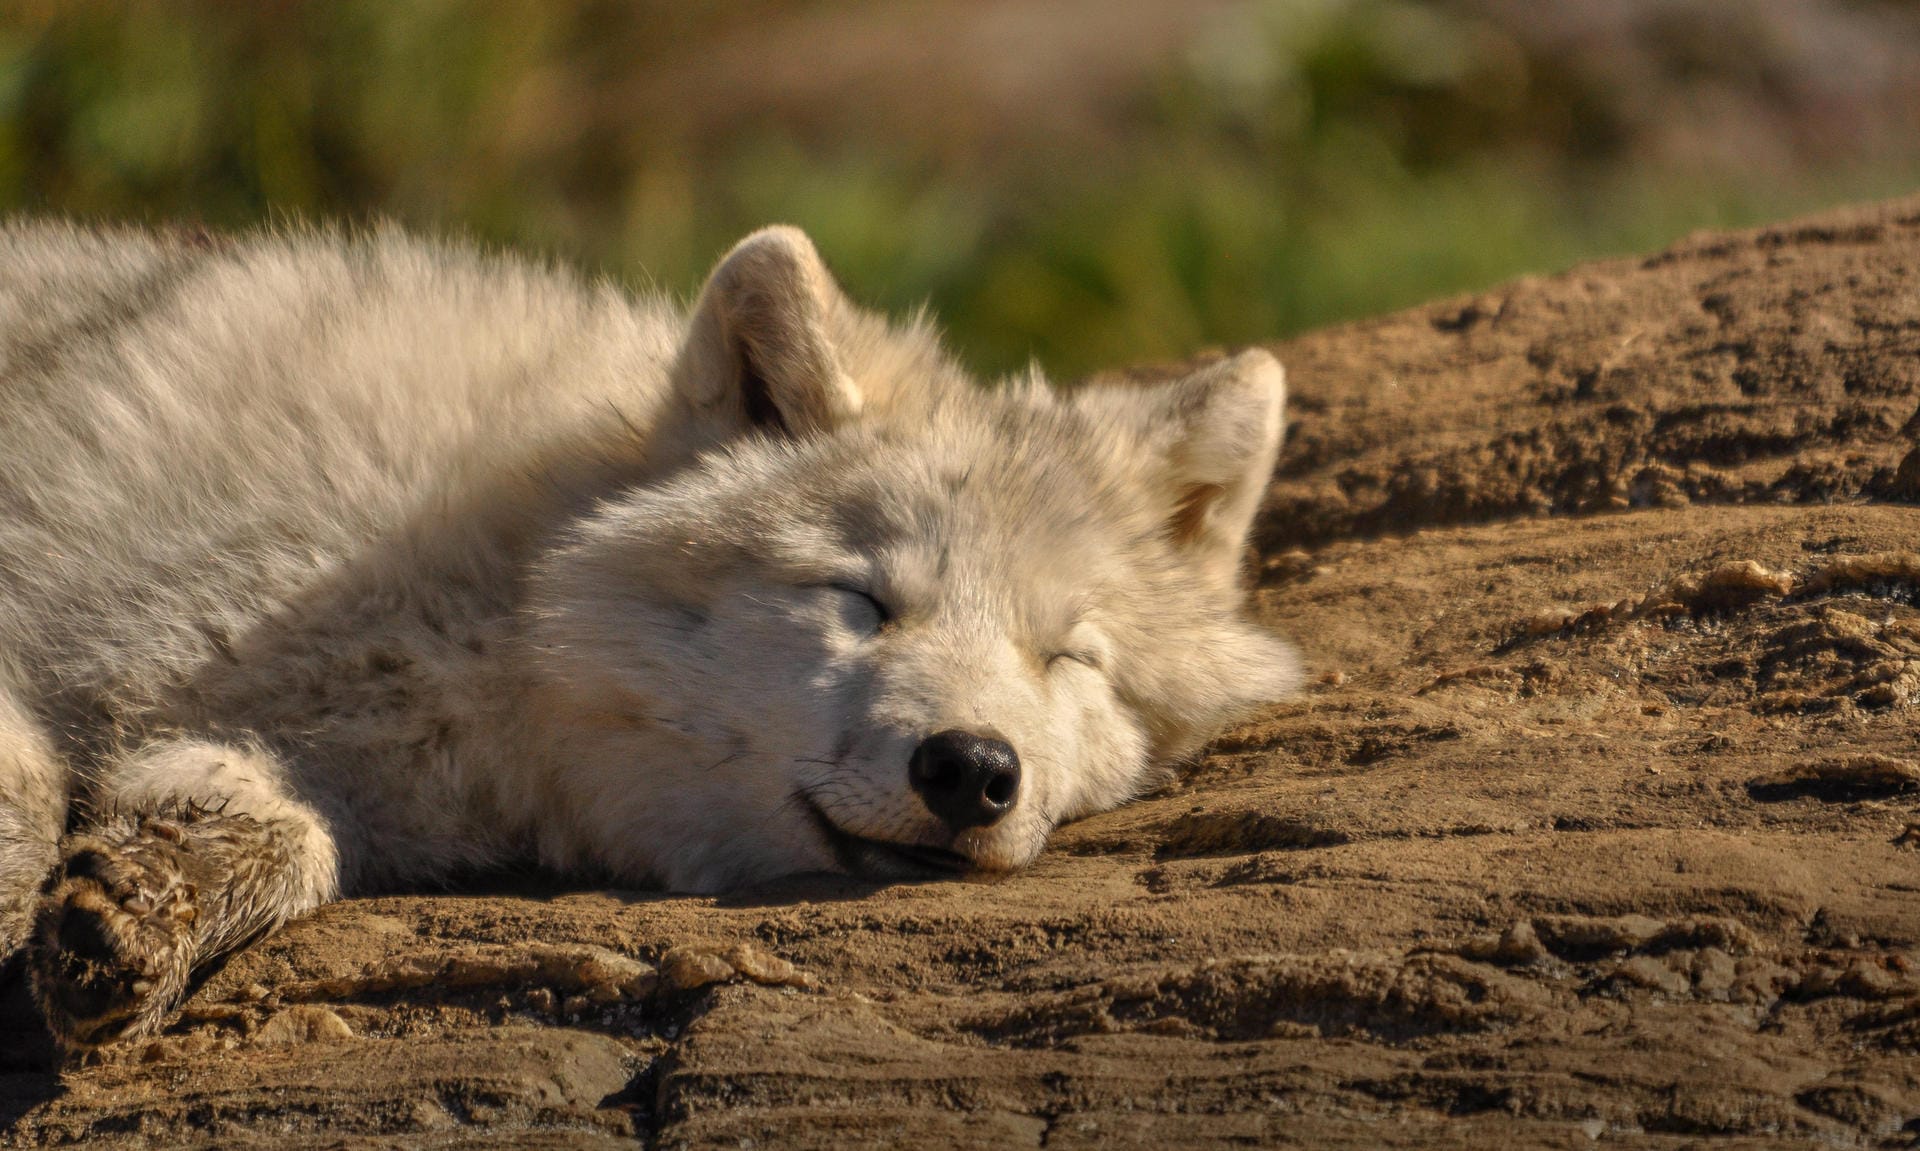 Tagsüber ziehen sich Wölfe zurück ins sichere Versteck zum Schlafen, Dösen und Ausruhen. Erst nachts werden sie aktiv.